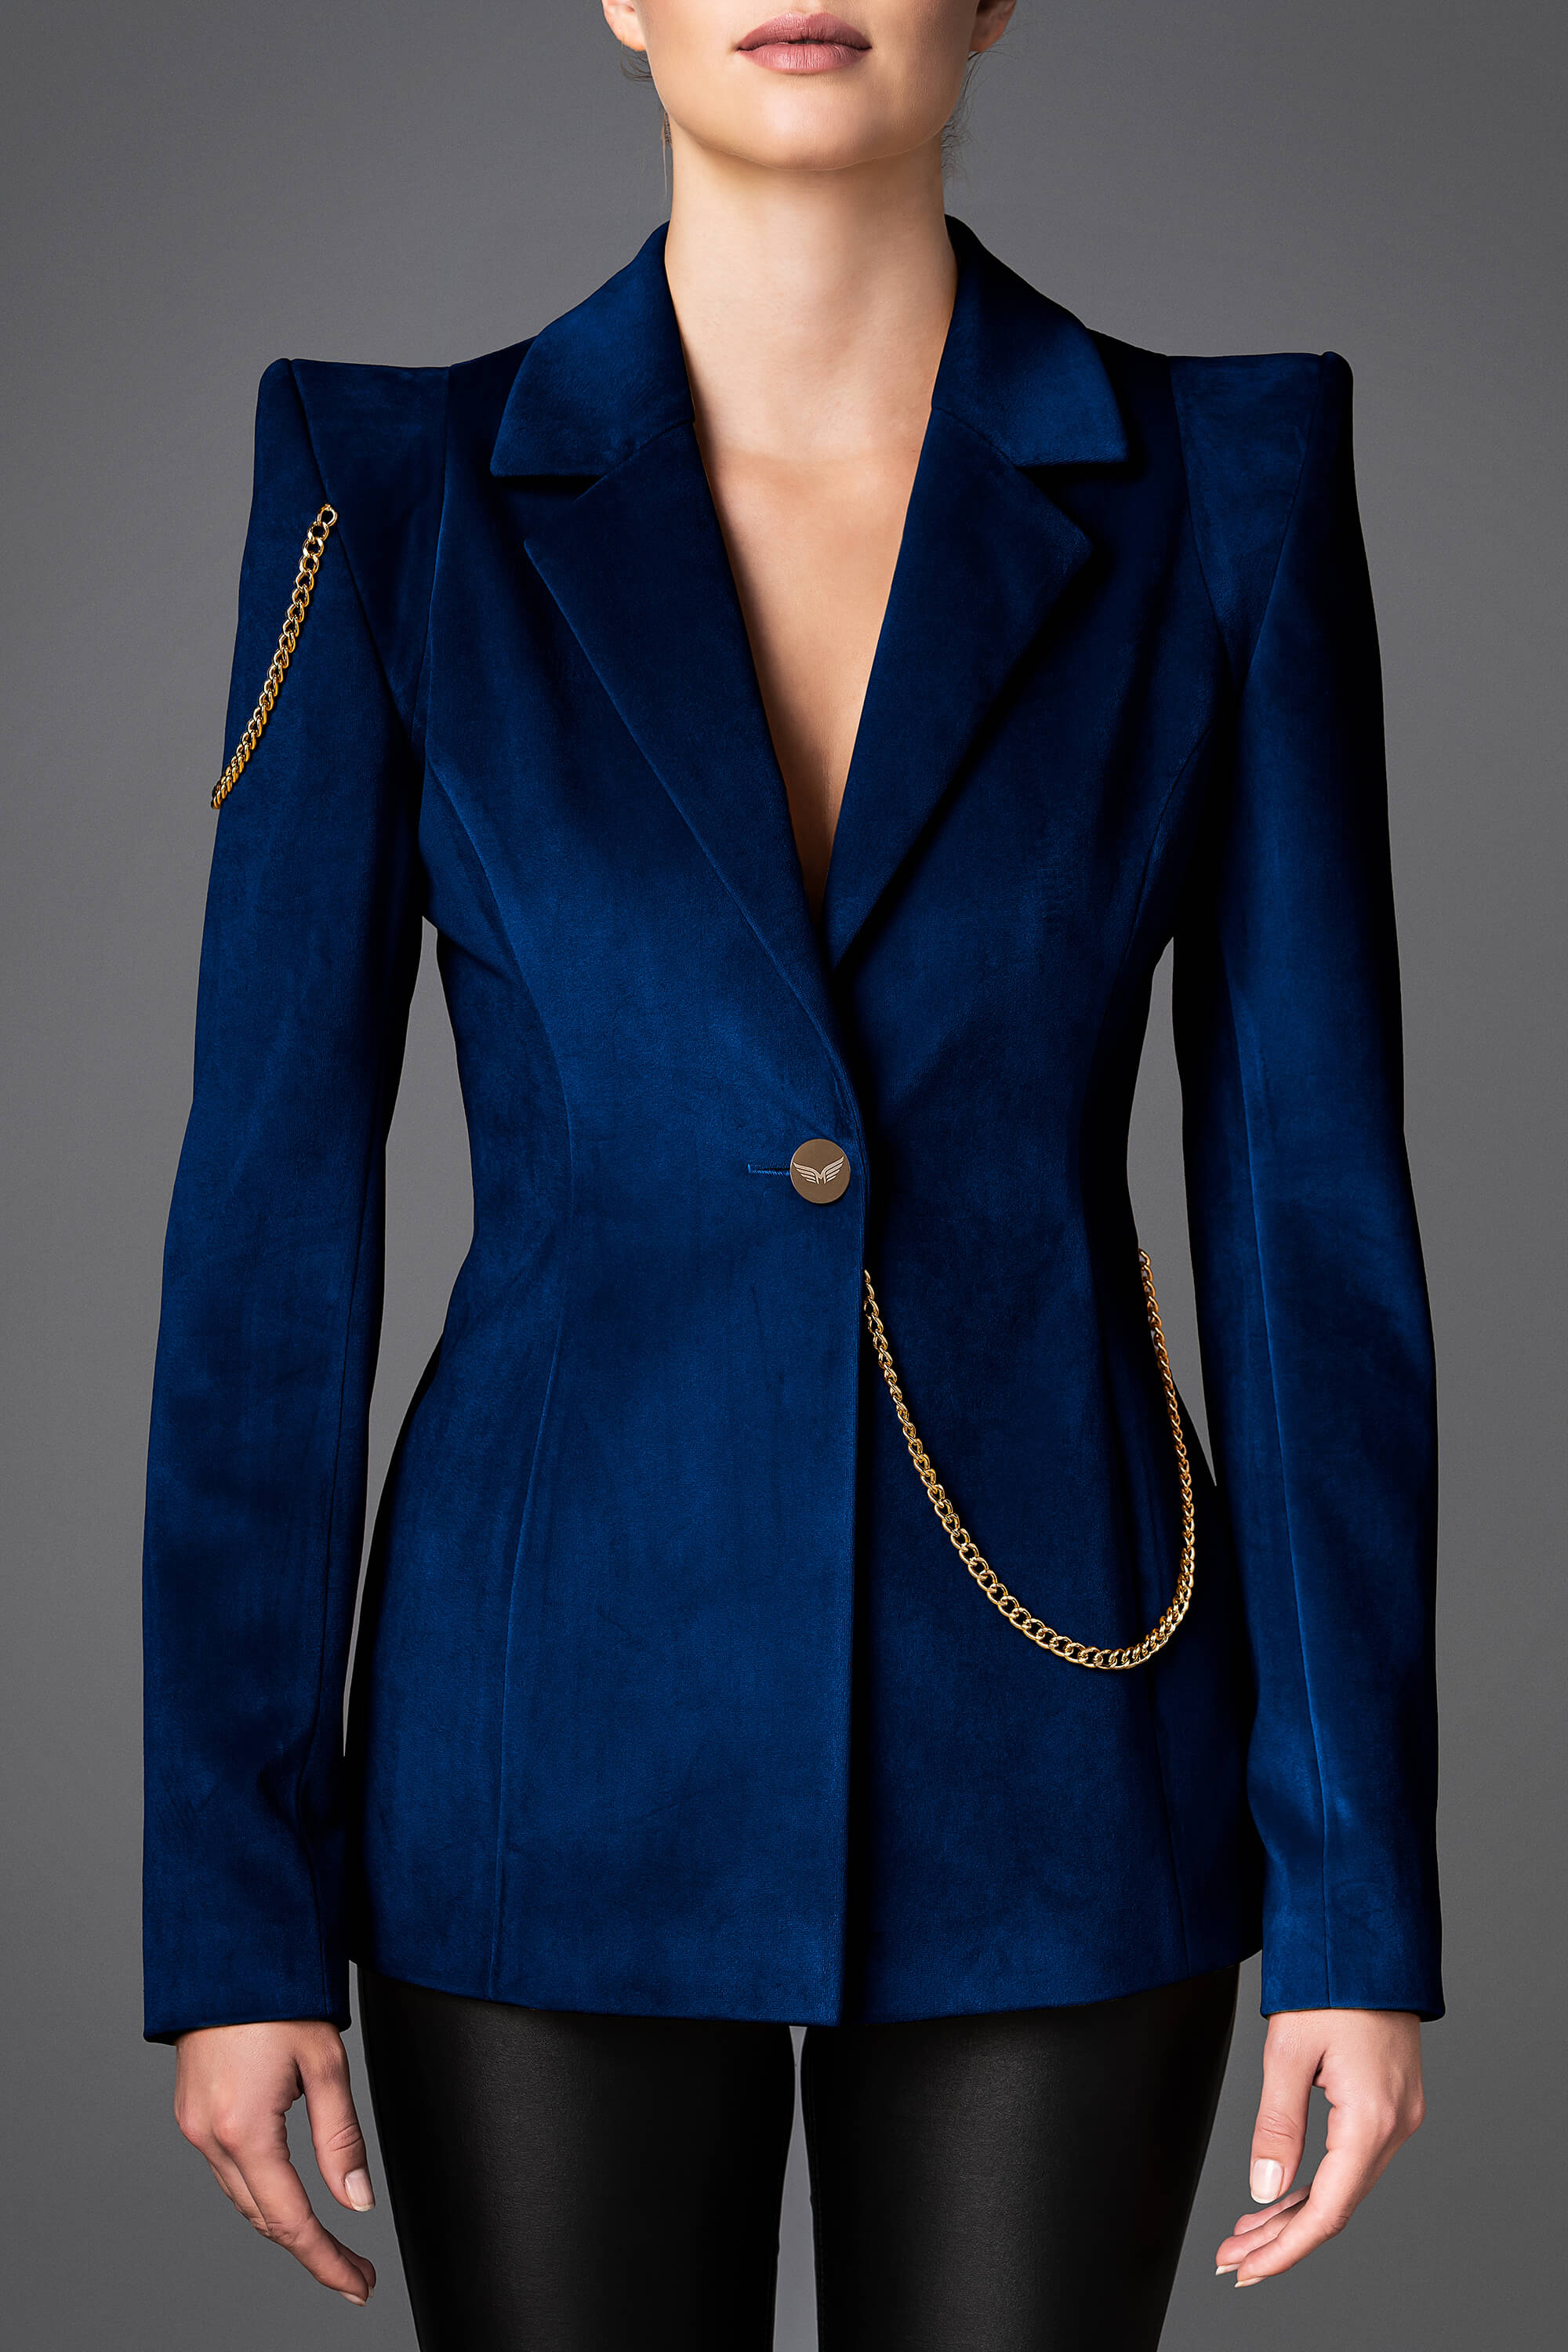 blue velvet jacket